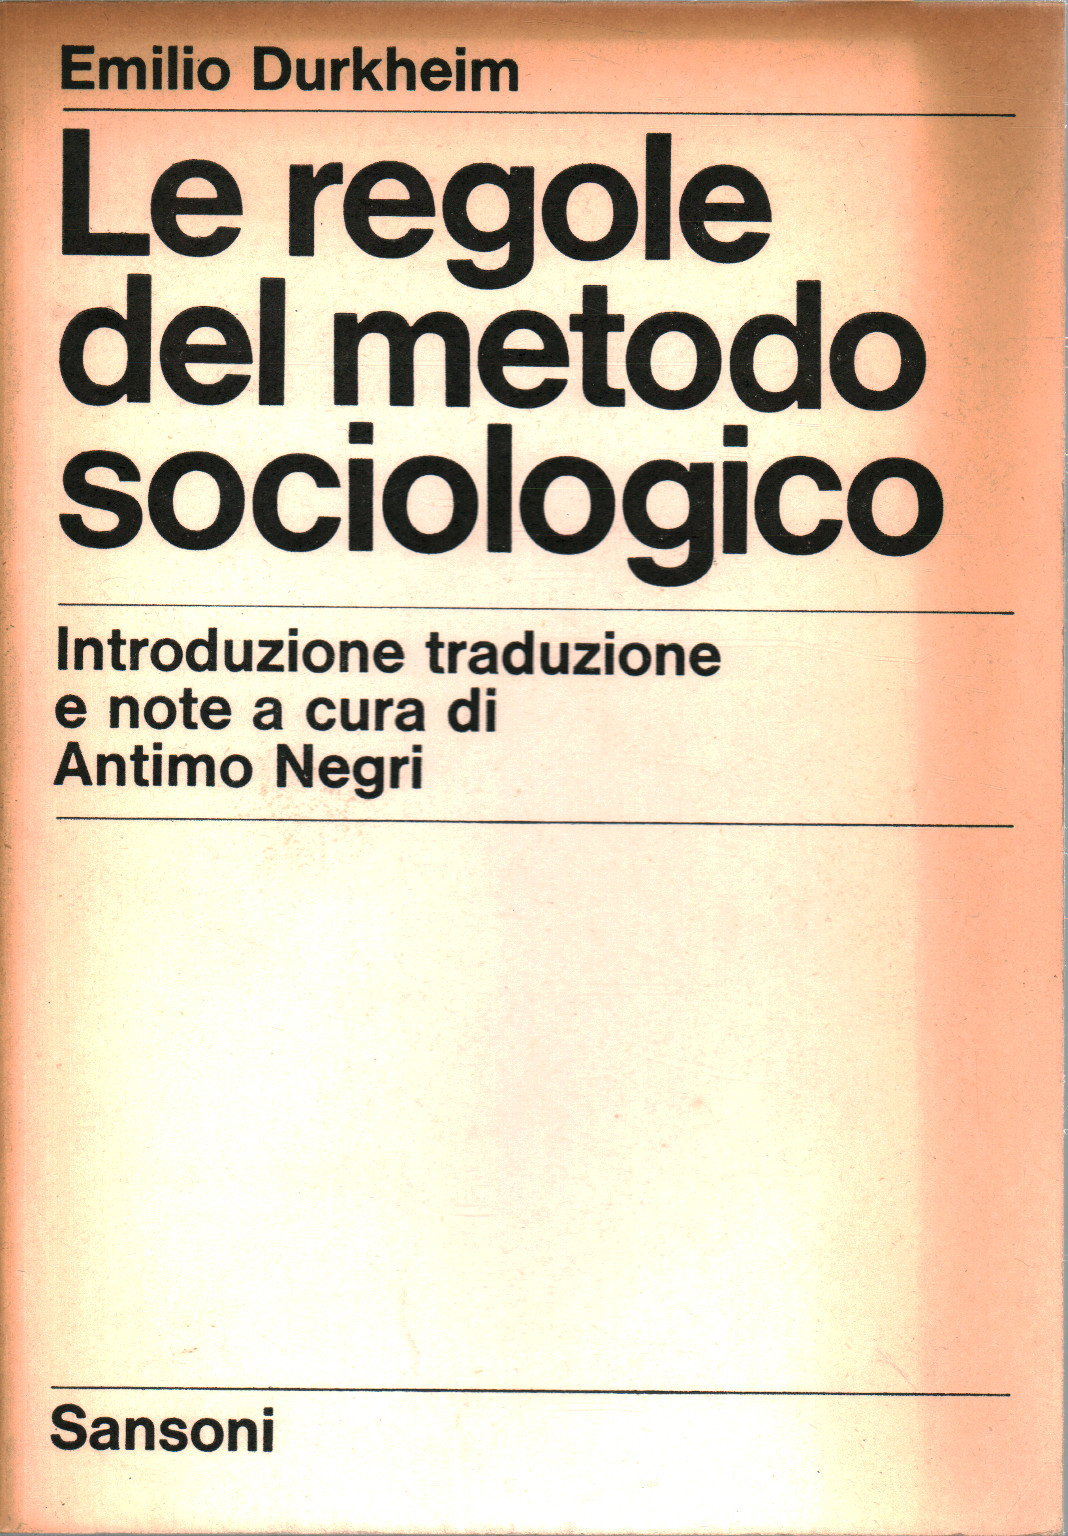 Las reglas del método sociológico, s.a.